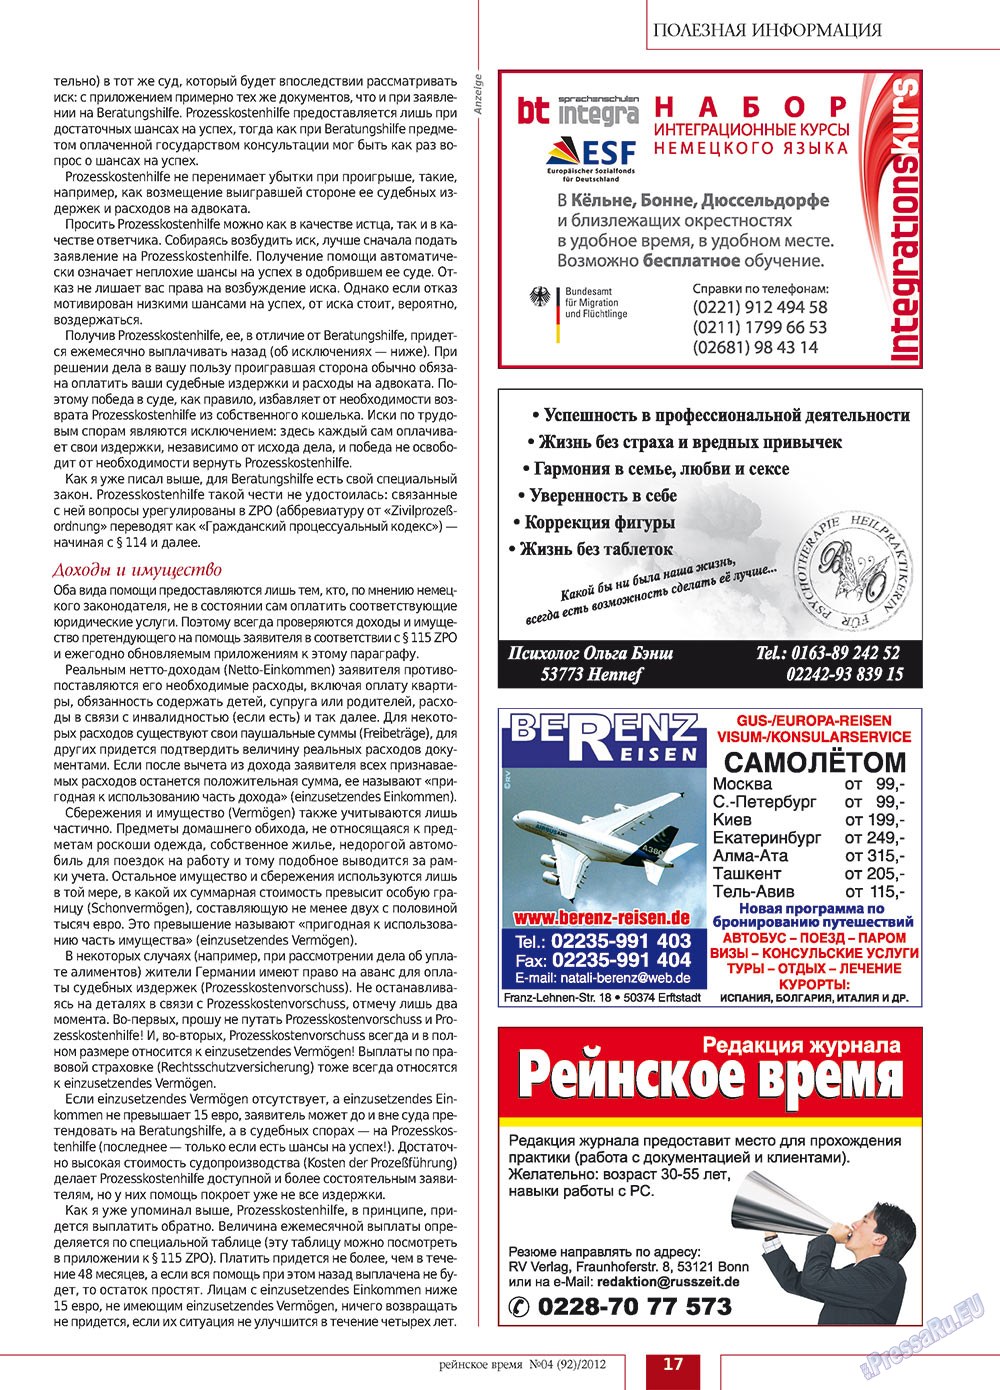 Рейнское время, журнал. 2012 №4 стр.17